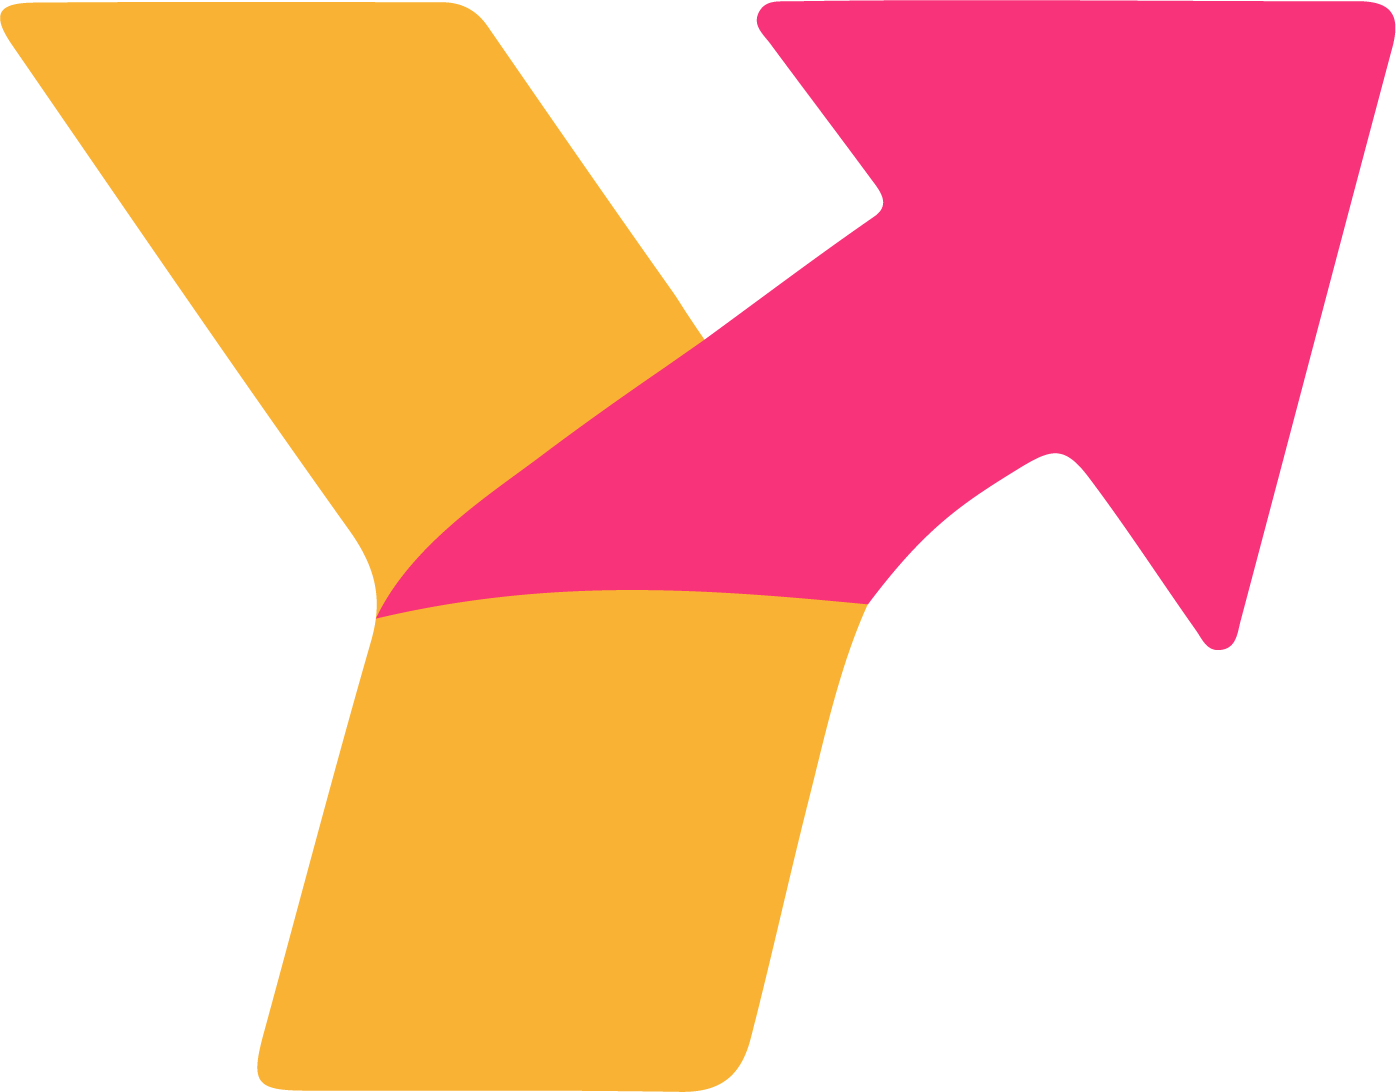 Yhdenvertaiset koulutuspolut -hankkeen logo